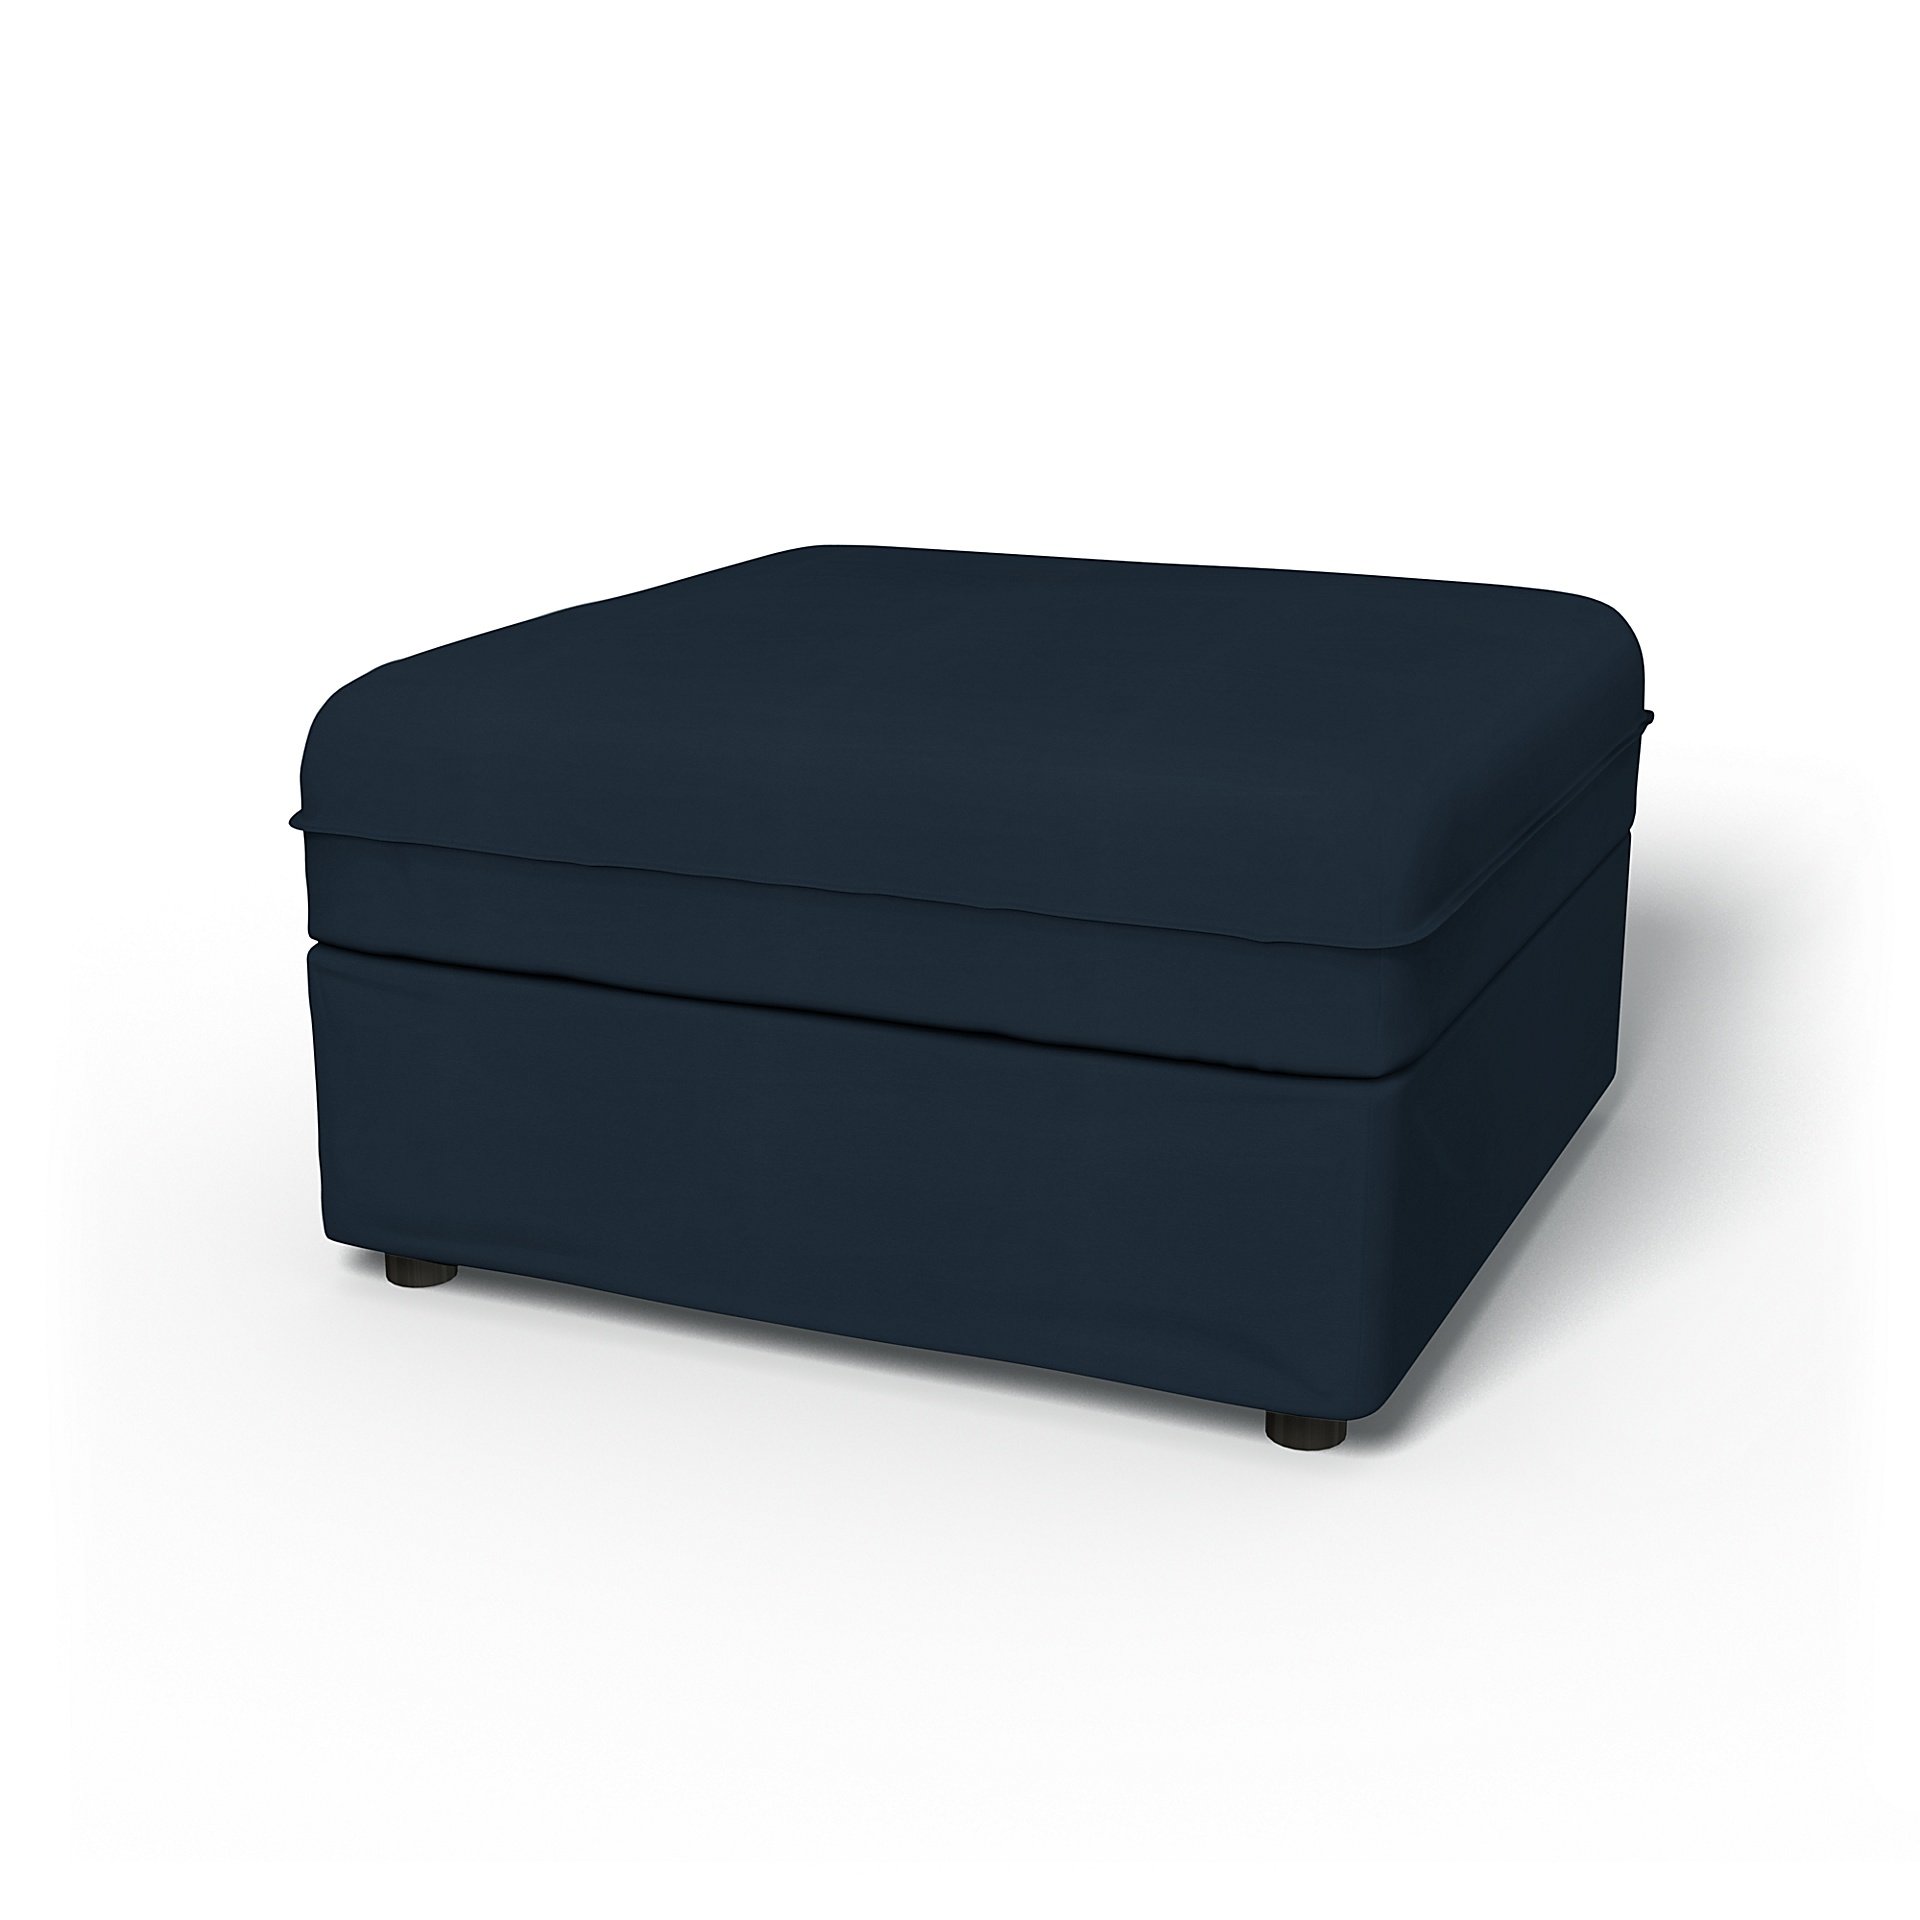 IKEA - Vallentuna Seat Module with Storage Cover 80x80cm 32x32in, Navy Blue, Cotton - Bemz